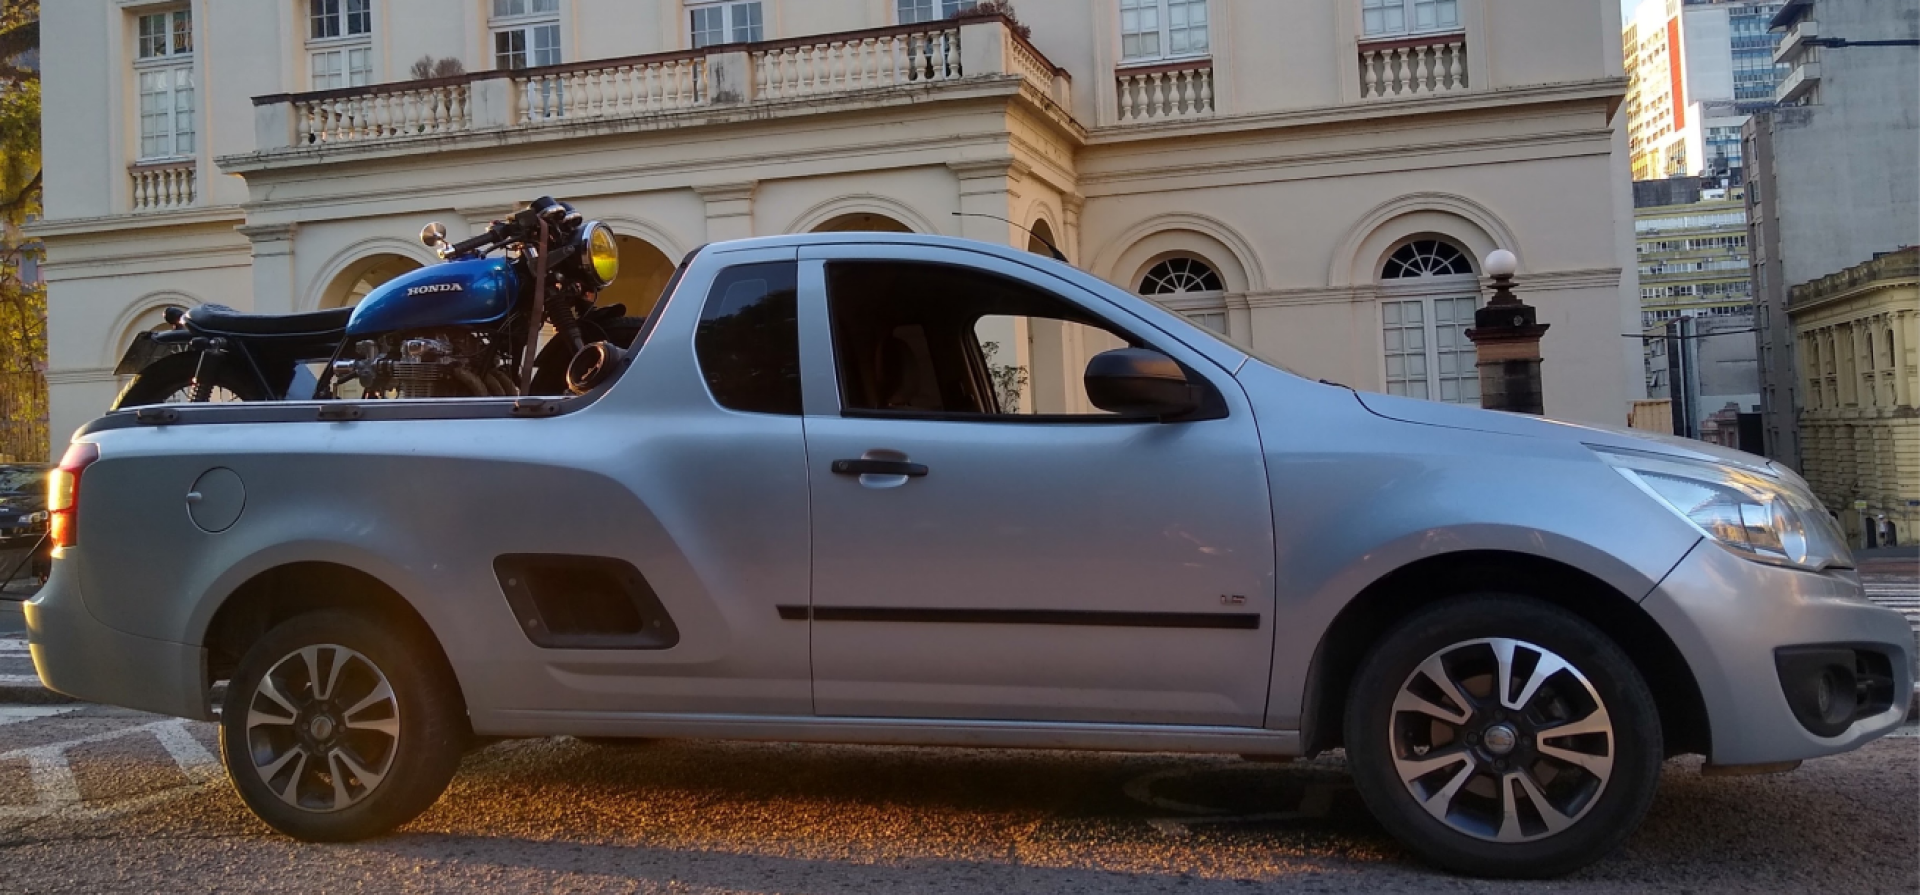 caminhonete cinza com moto honda estradeira azul em cima, guincho de motos em porto alegre